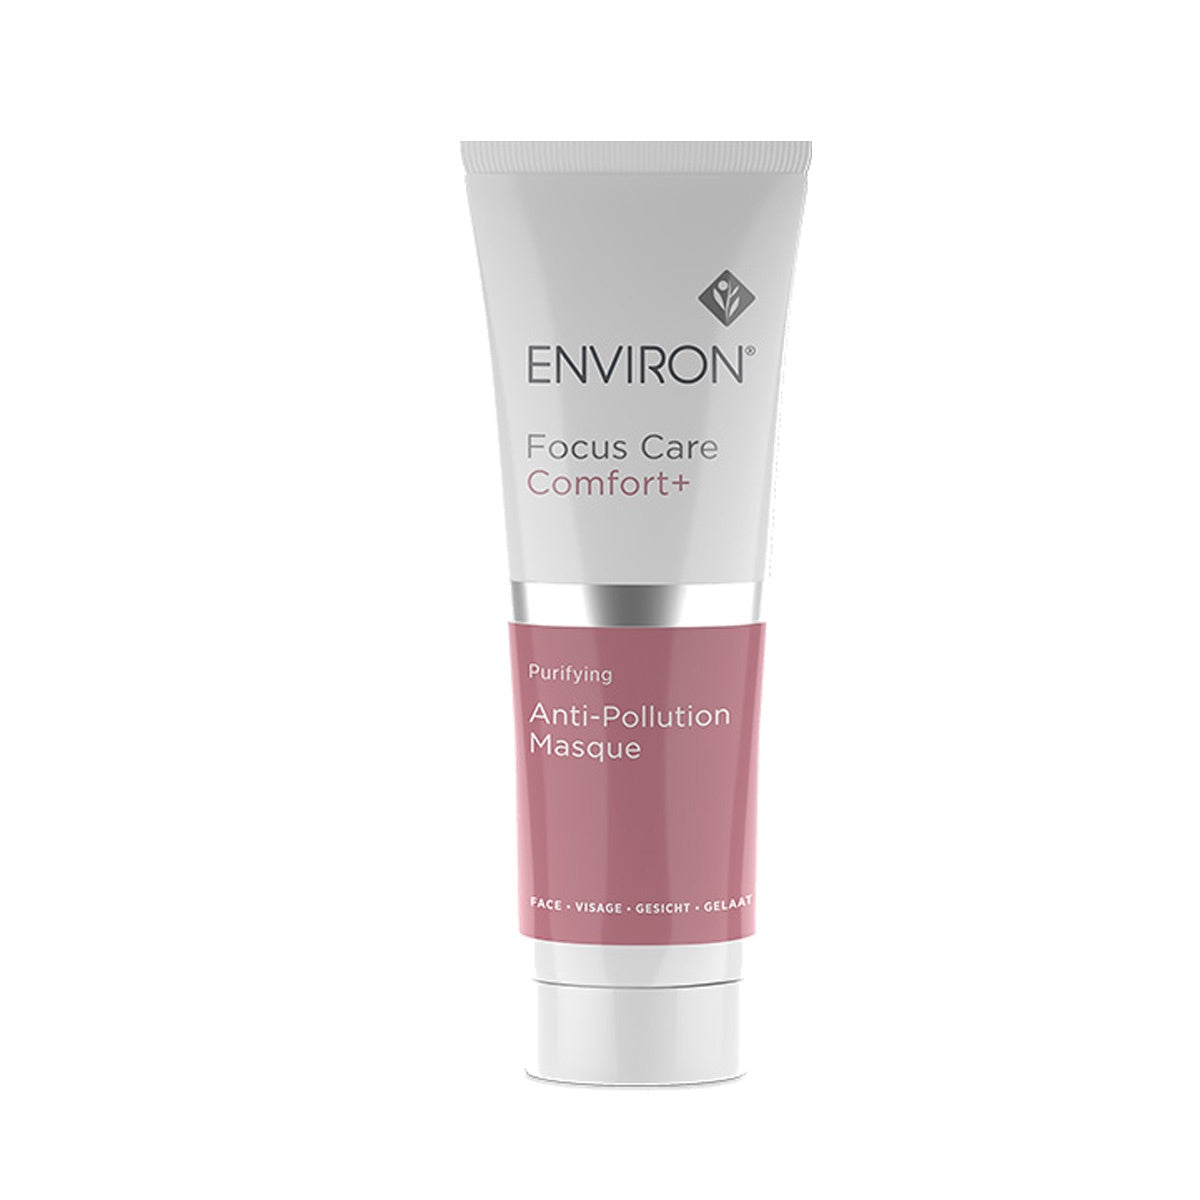 ENNVIRON (Focus Care Comfort+) - Anti-Pollution Masque